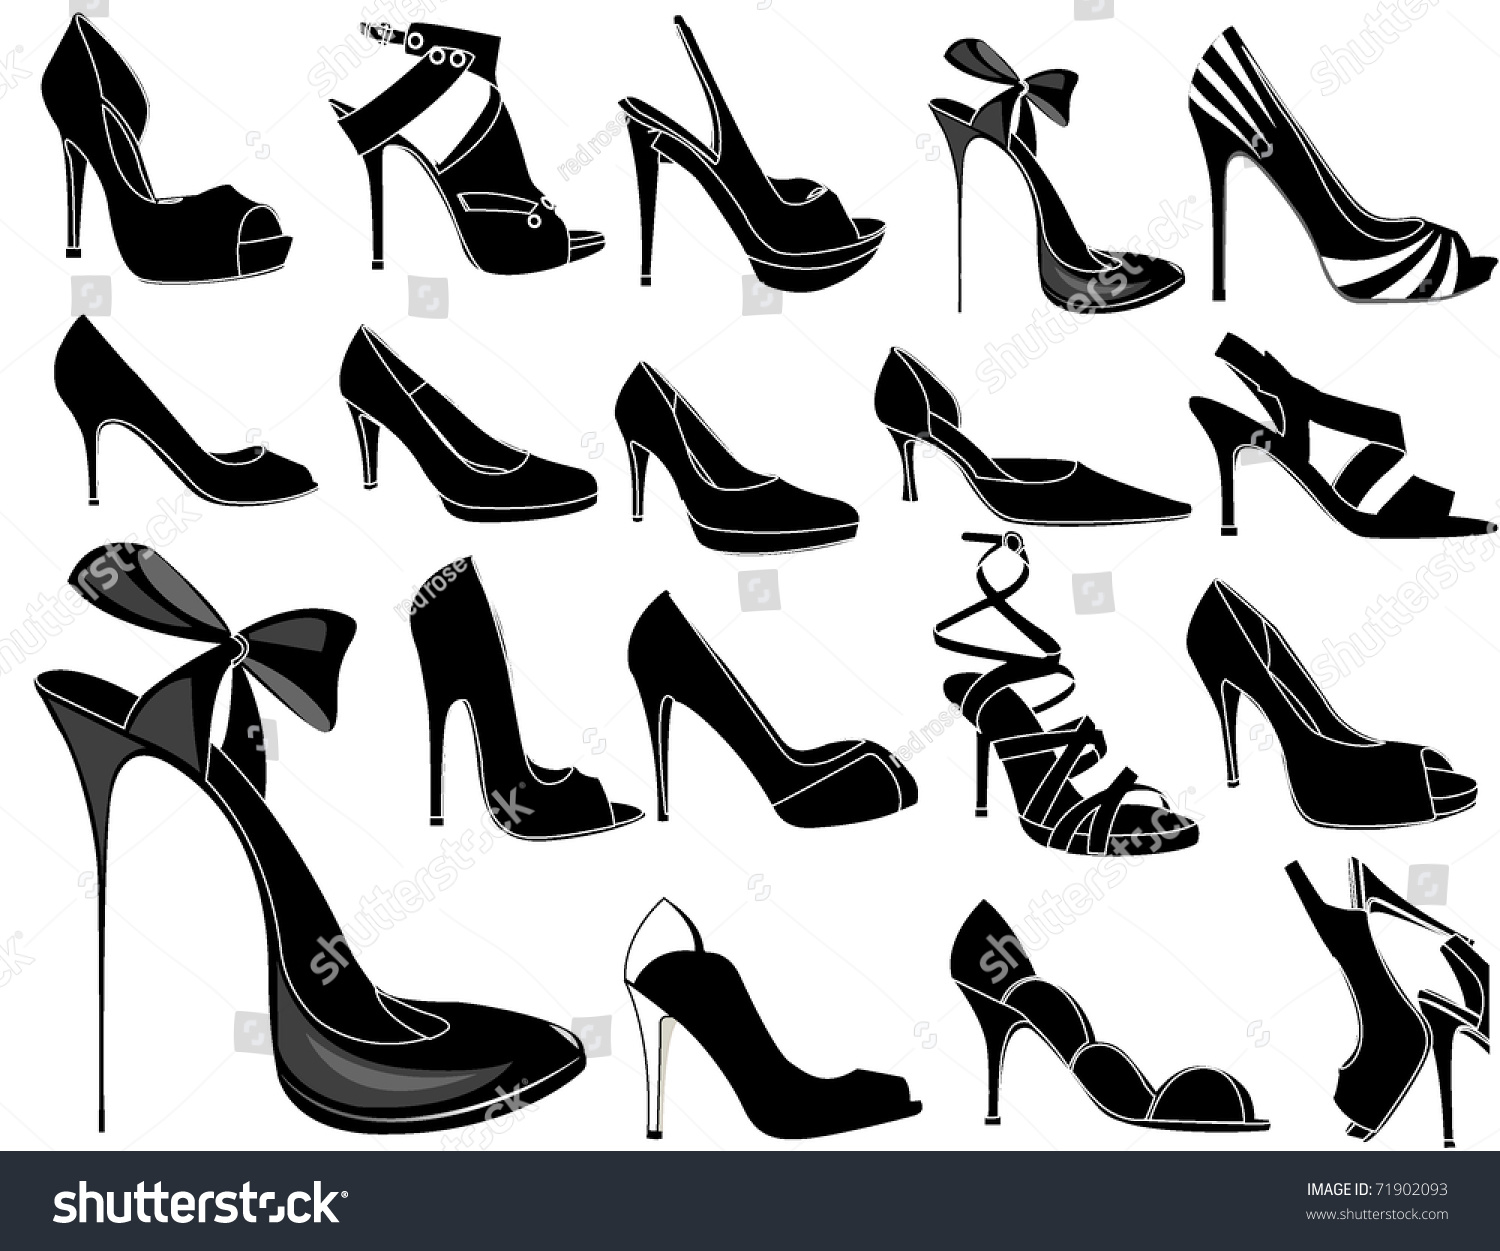 8,439 Woman stilettos silhouette Images, Stock Photos & Vectors ...